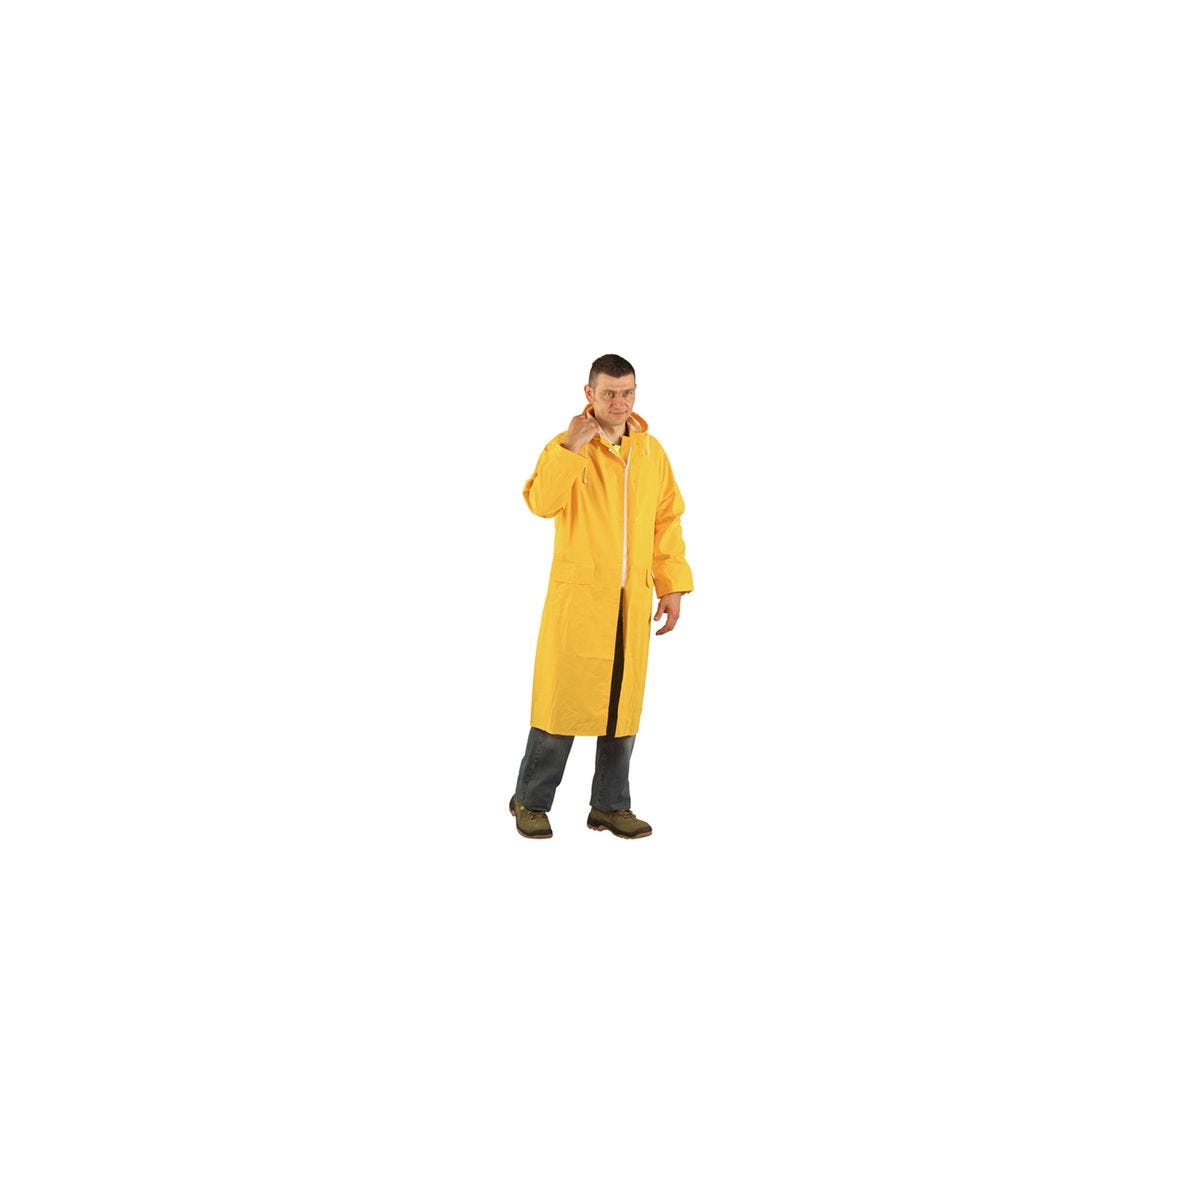 Manteau de pluie CO/PES, jaune, 415g/m² - COVERGUARD - Taille L 0